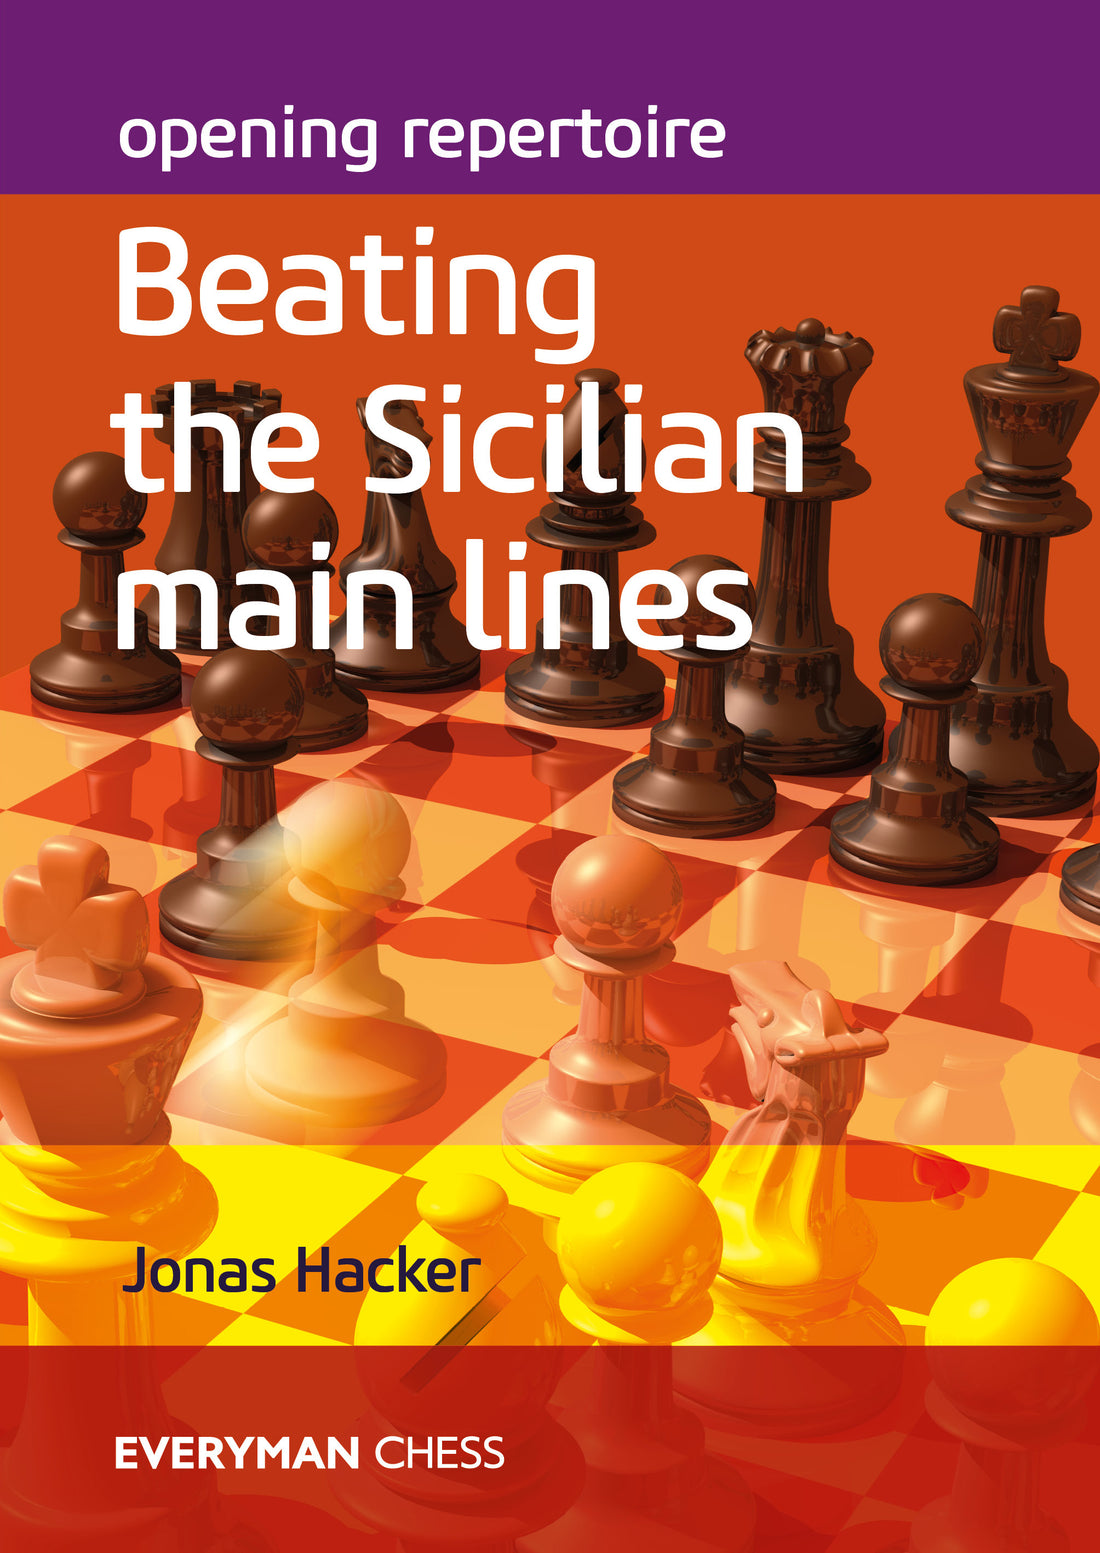 Battle vs Chess (7) - Order Campaign: Gilead 